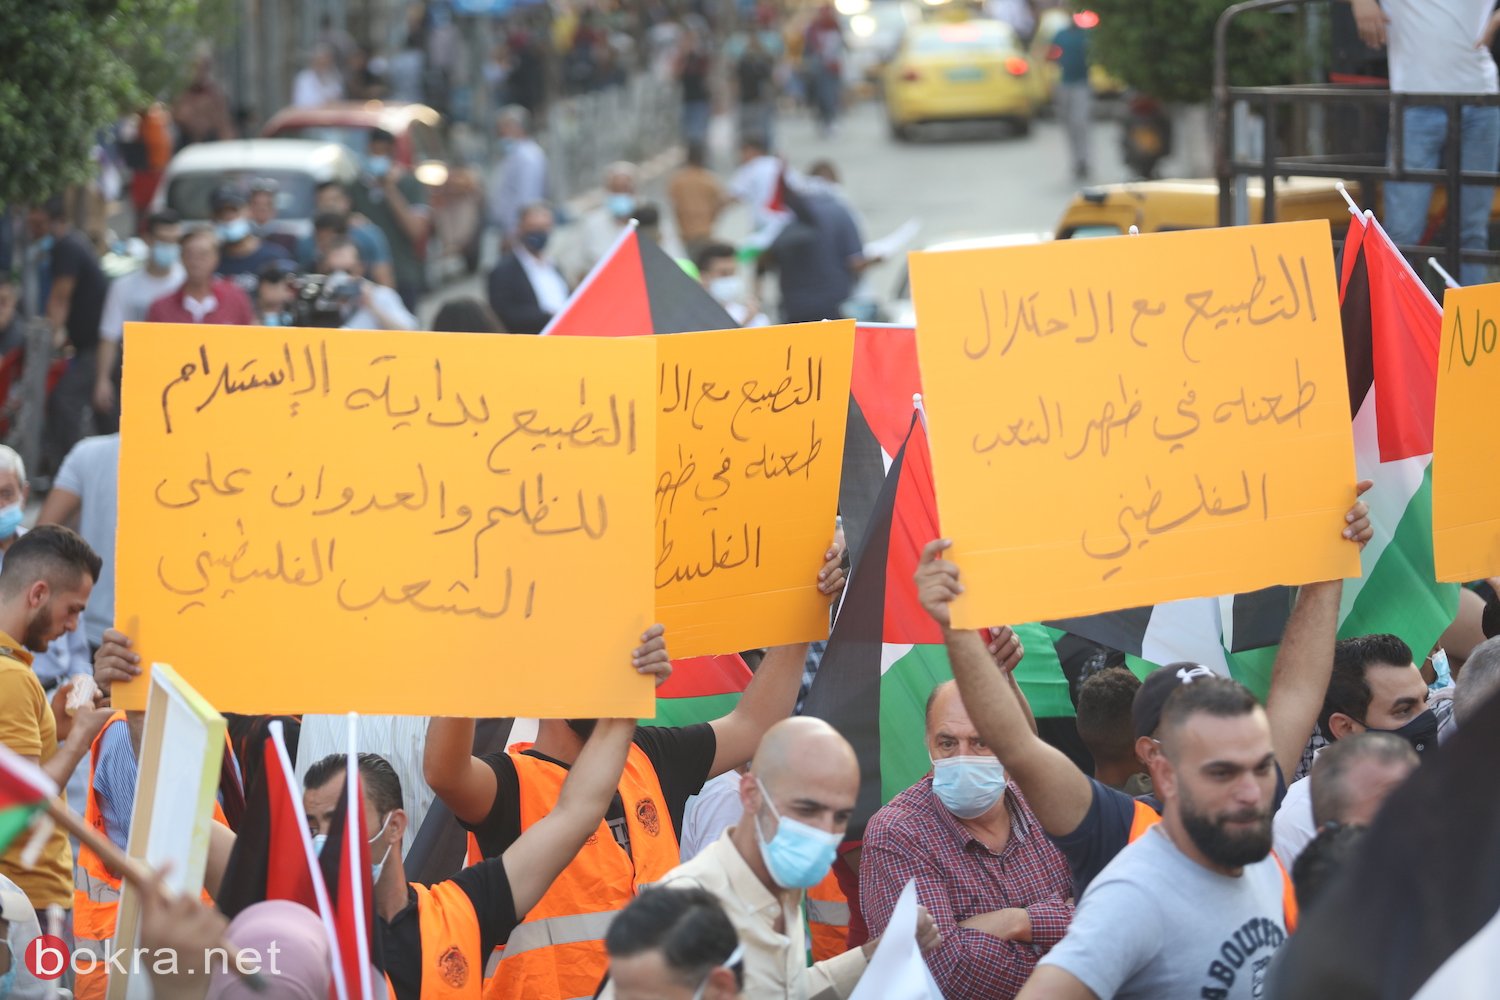 جماهير غفيرة من أبناء شعبنا تتظاهر في رام الله رفضا للتطبيع-1